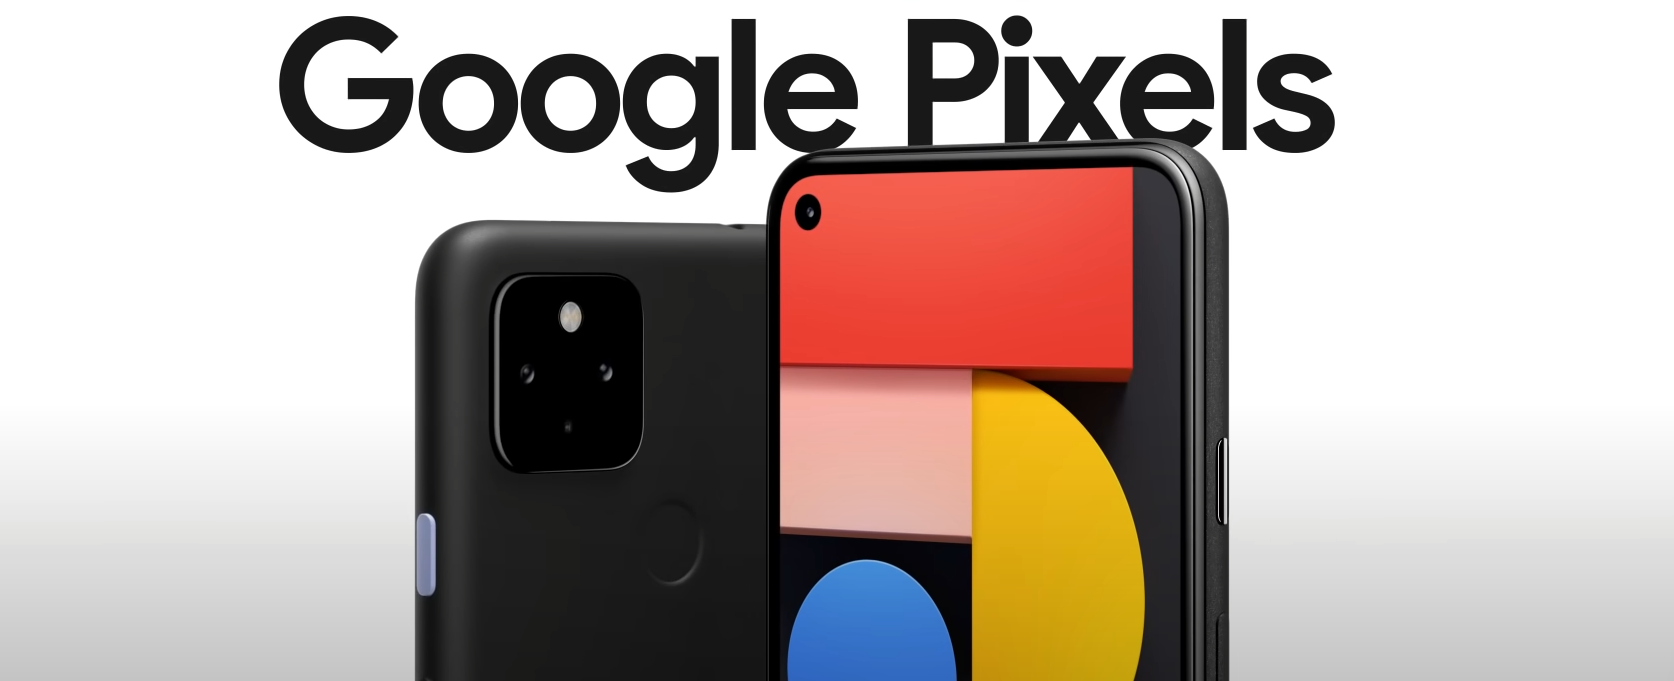 Google ทำภาพตัวอย่างรูปจากกล้อง Pixel 5a หลุดโดยไม่ตั้งใจ!